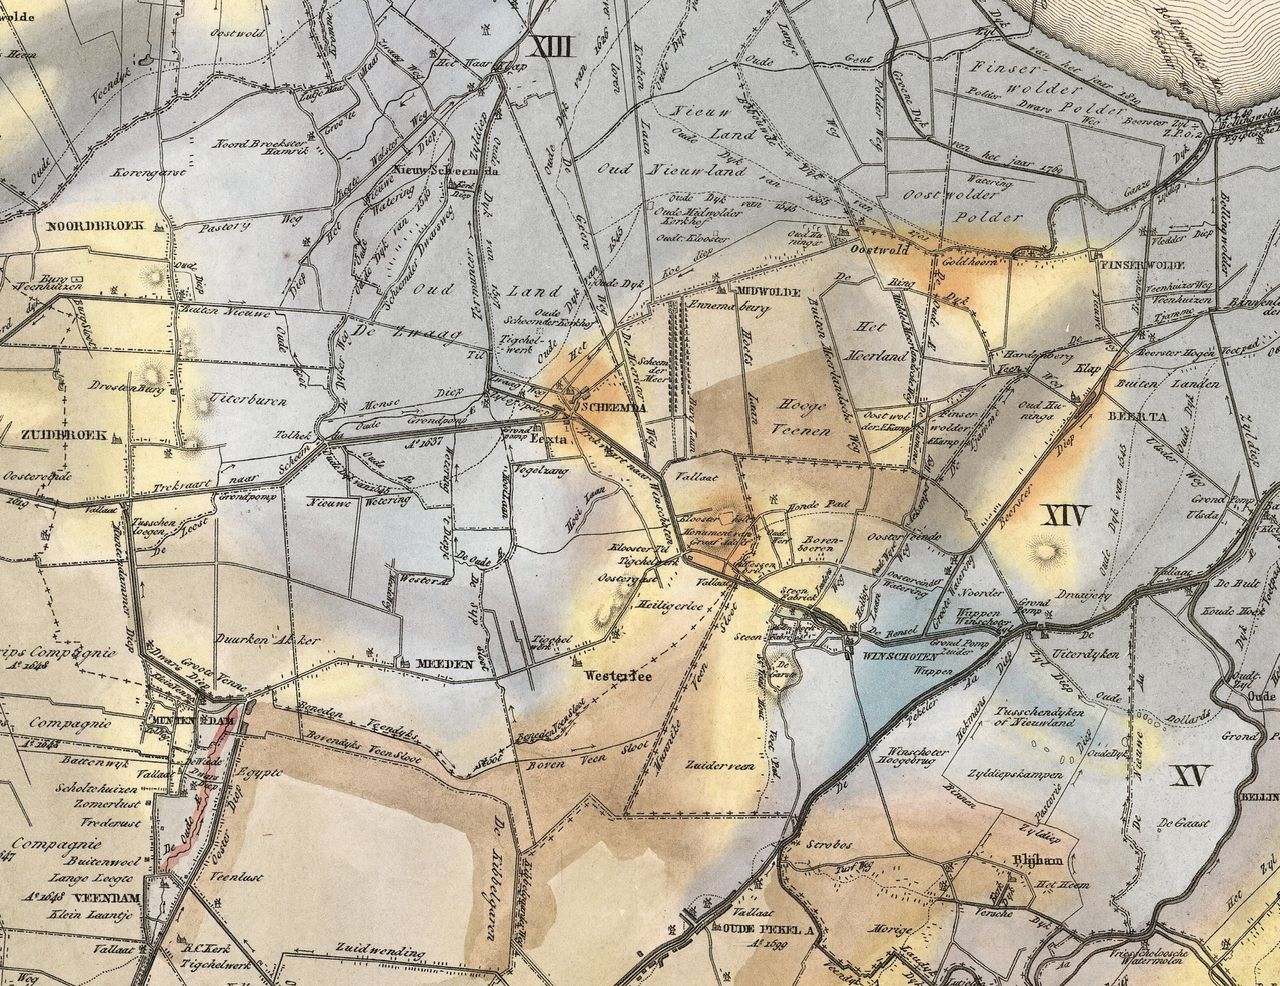 Geologische kaart uit De Atlas van Acker Stratingh (1837) van een deel van de provincie Groningen. In het midden (lichtgeel) zandrug met o.a. de dorpen Westerlee en Heiligerlee. Aangrenzend (blauw) klei uit de Dollardpolder.